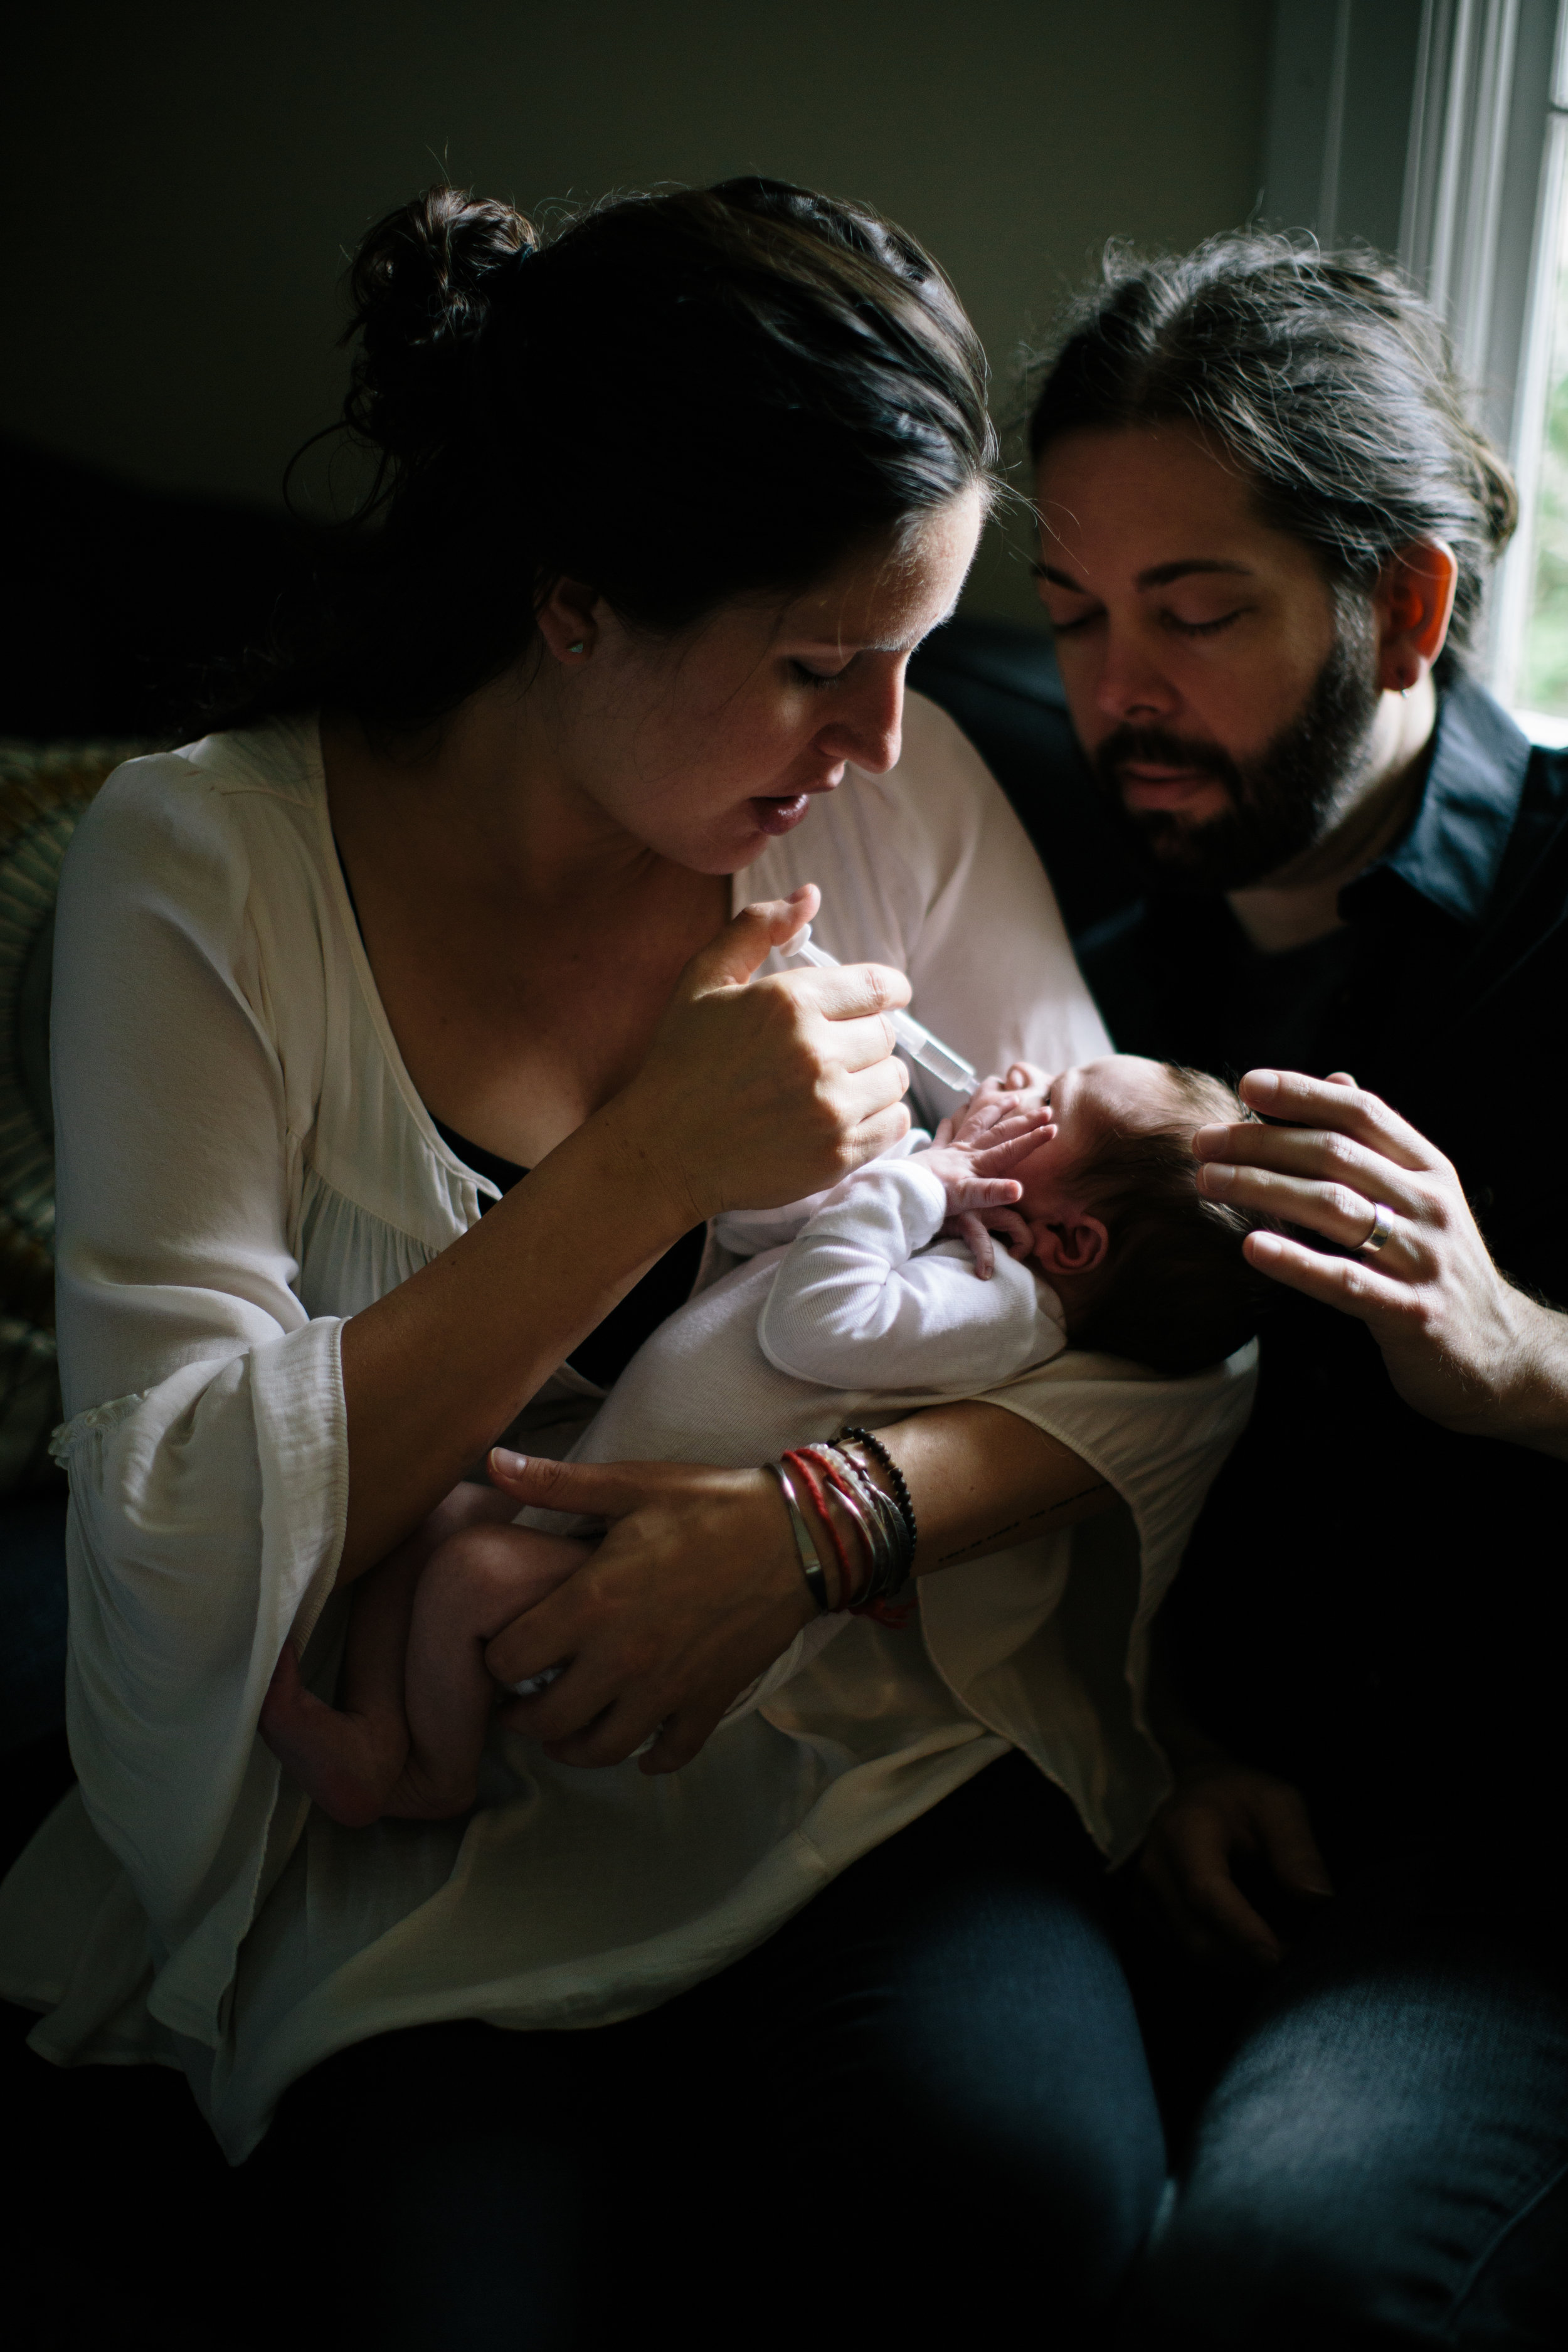 Søren | newborn photographer | Durham, NC | Merritt Chesson Photography